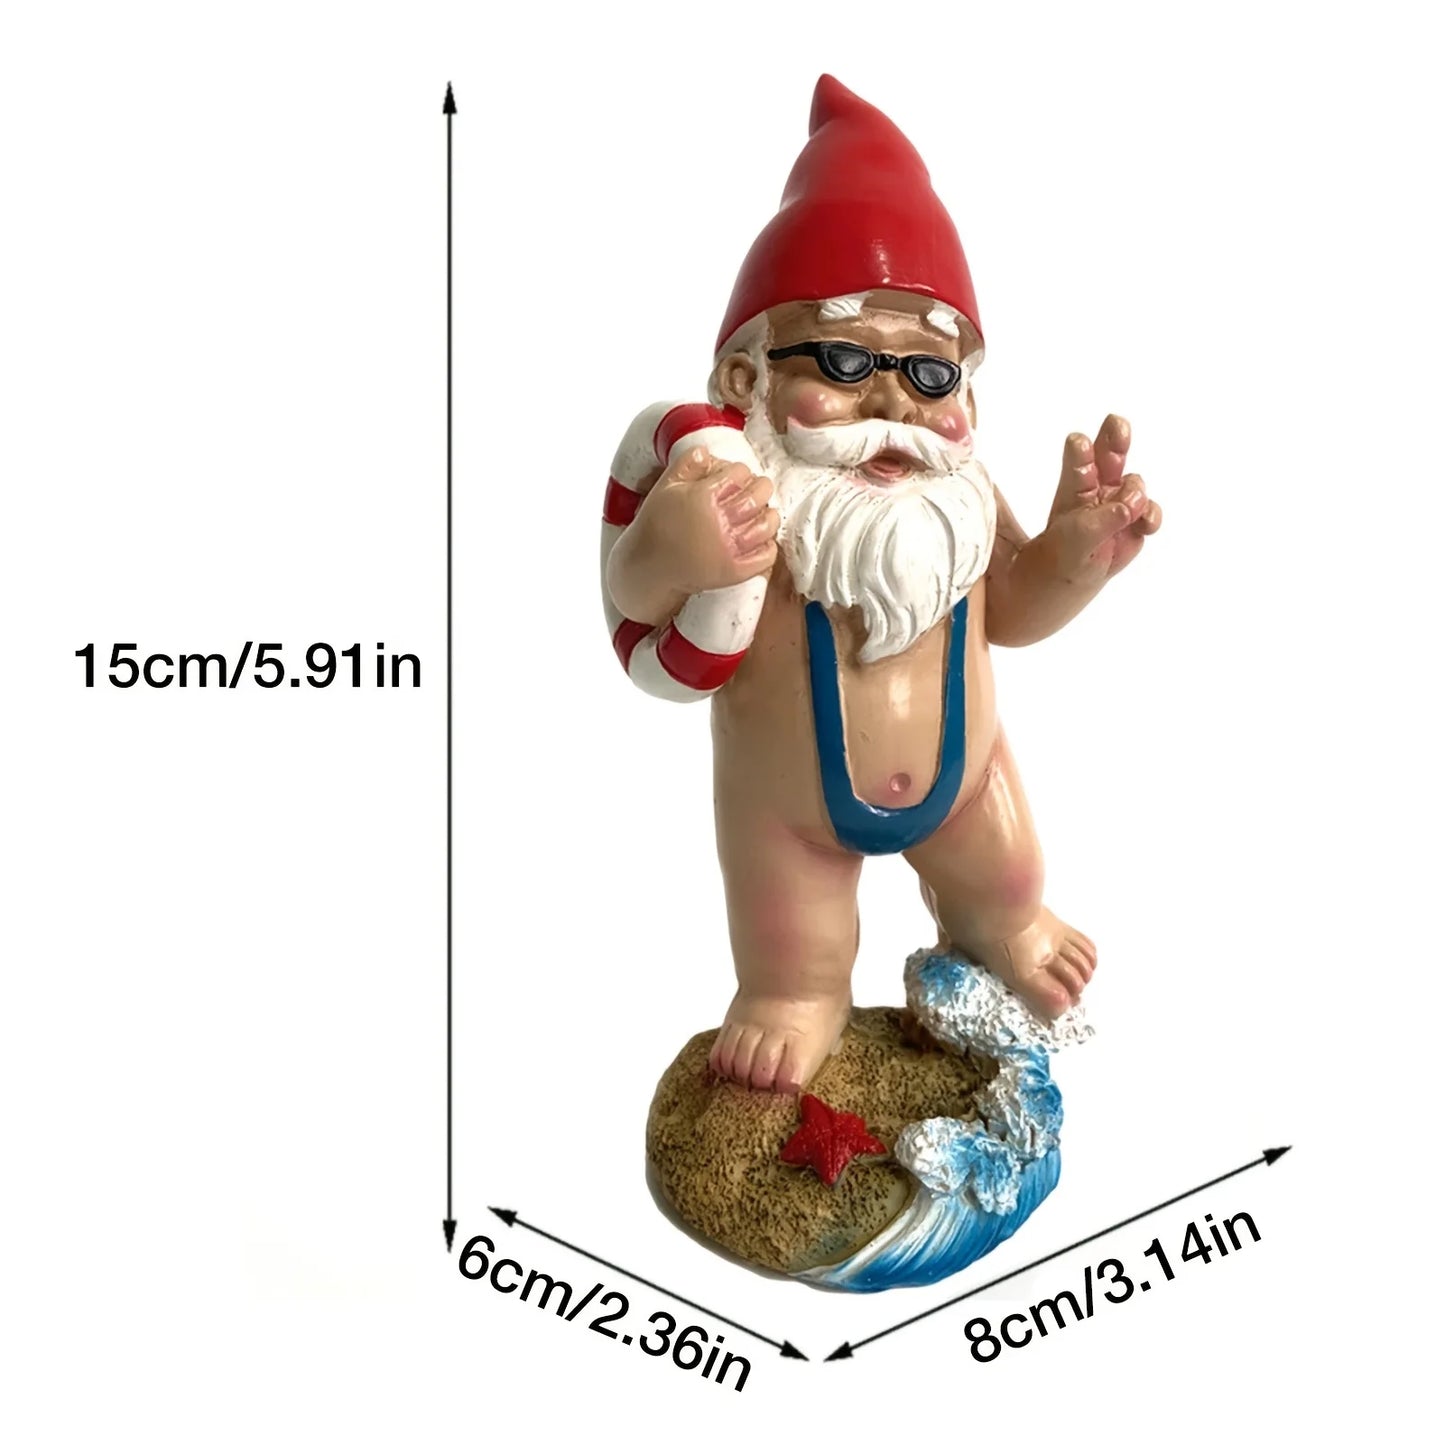 Statue de Gnome en résine, anneau de natation de jardin amusant, artisanat amusant, barbe blanche, décoration d'intérieur pour la maison, cadeaux artisanaux, 1 pièce